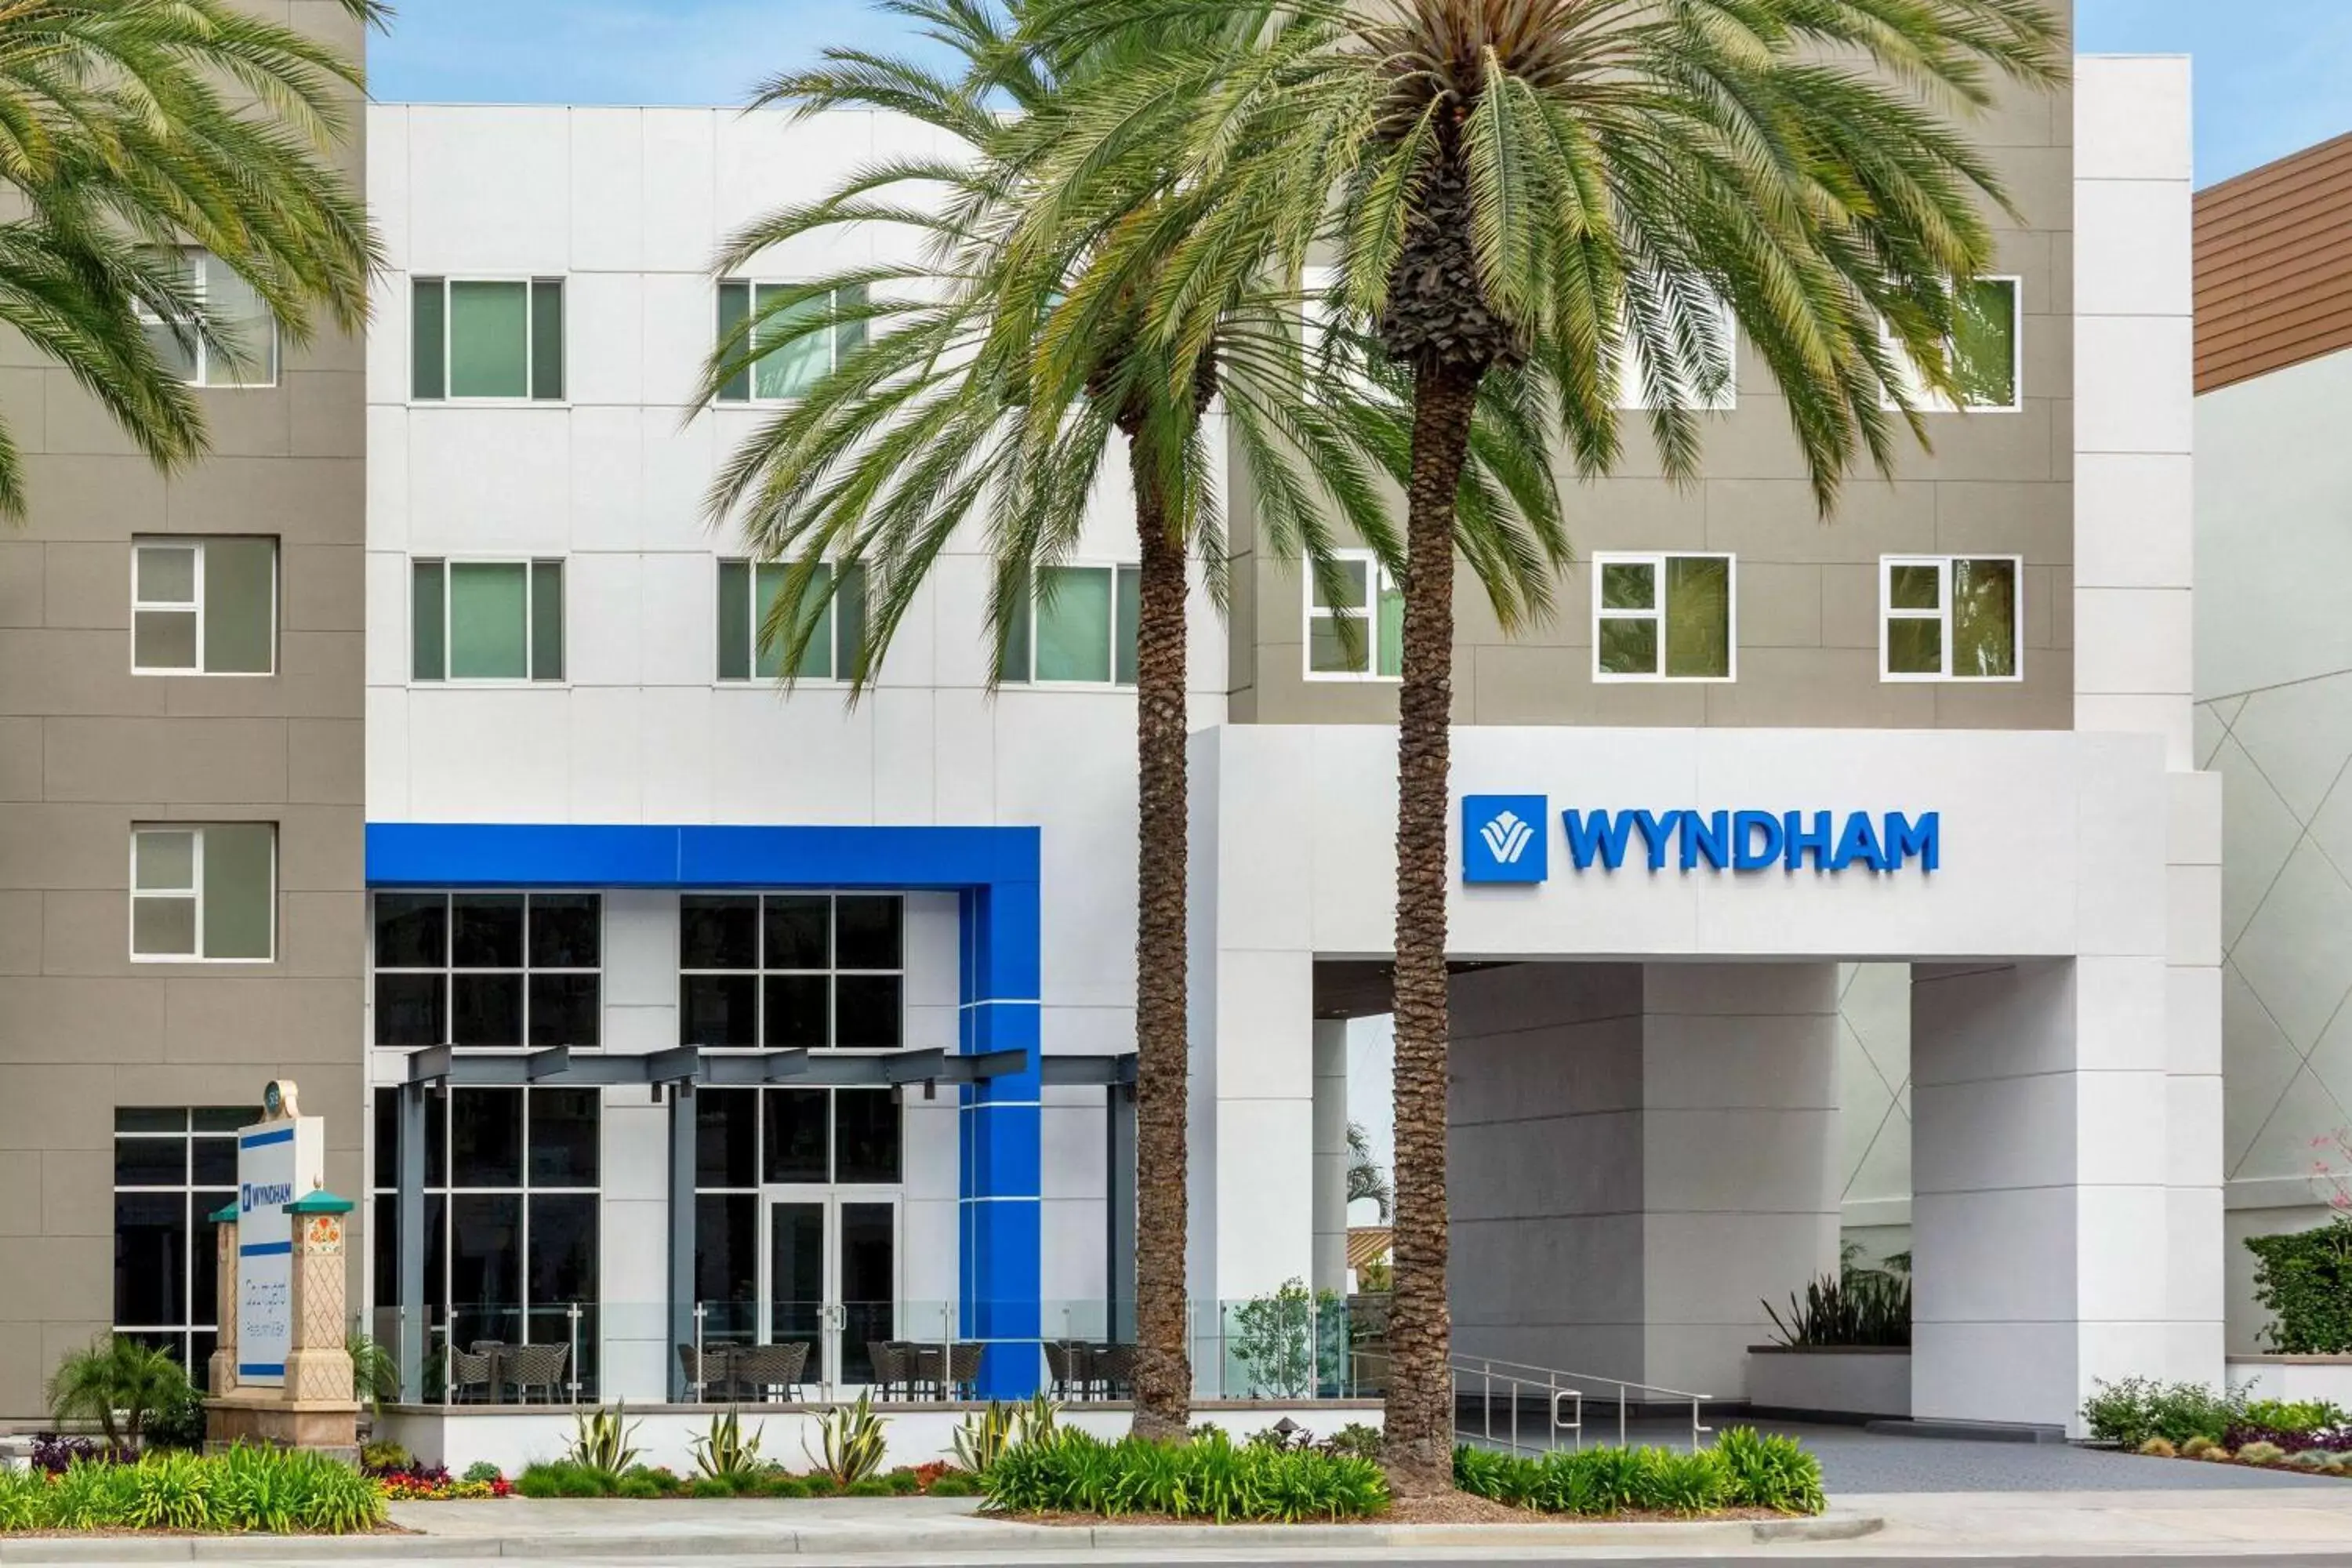 Property Building in Wyndham Anaheim